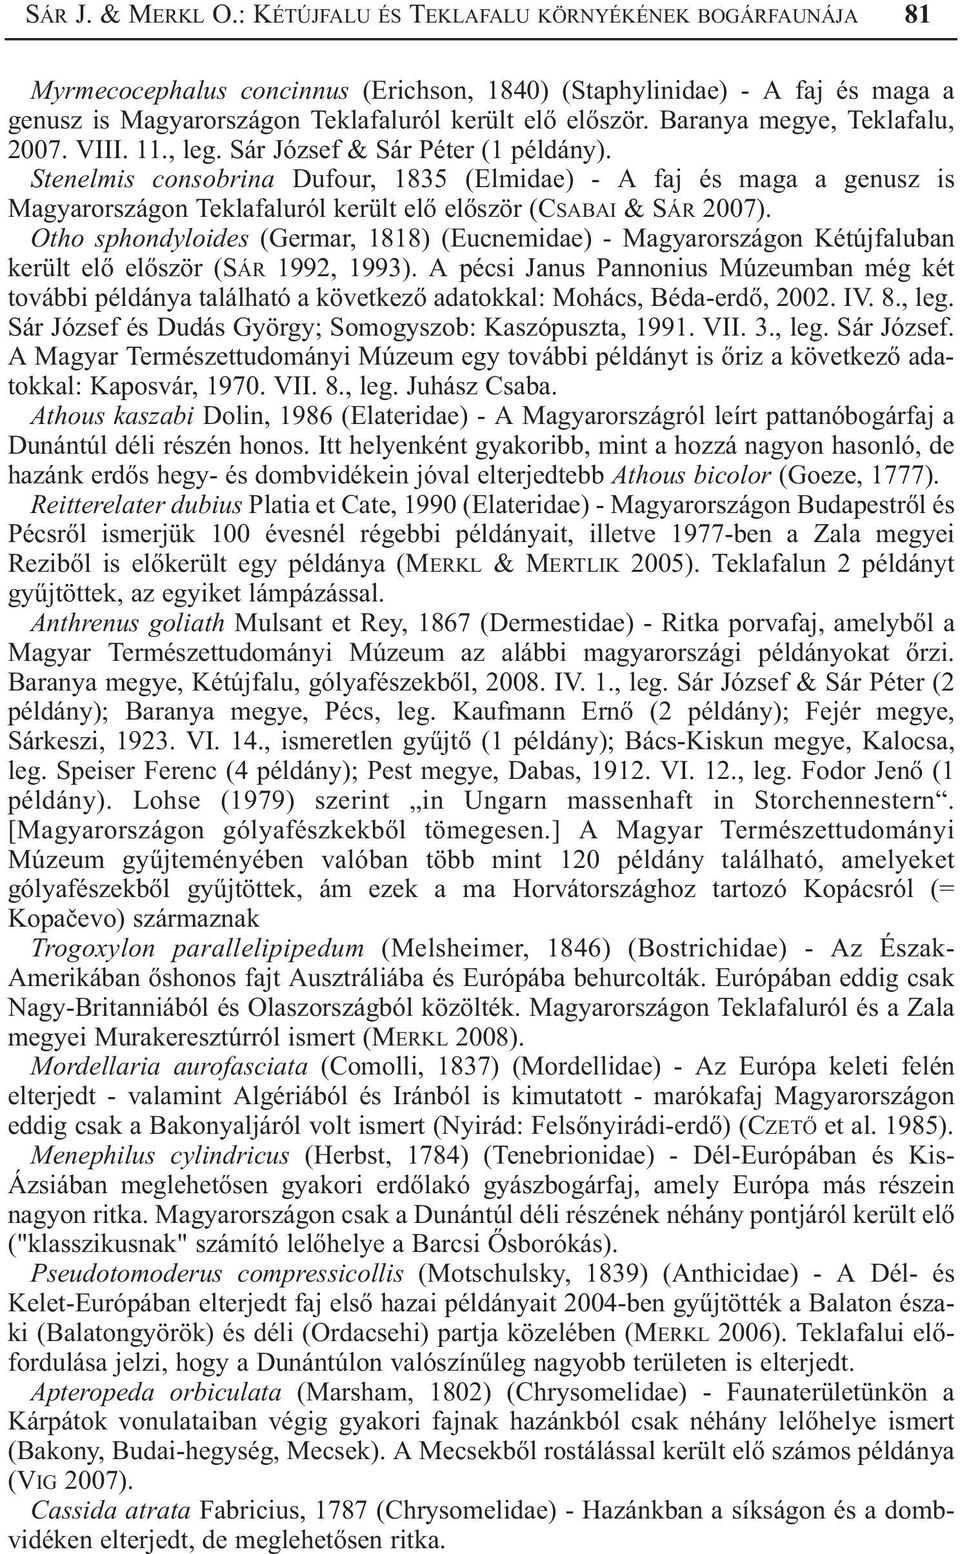 Baranya megye, Teklafalu, 2007. VIII. 11., leg. Sár József & Sár Péter (1 példány).